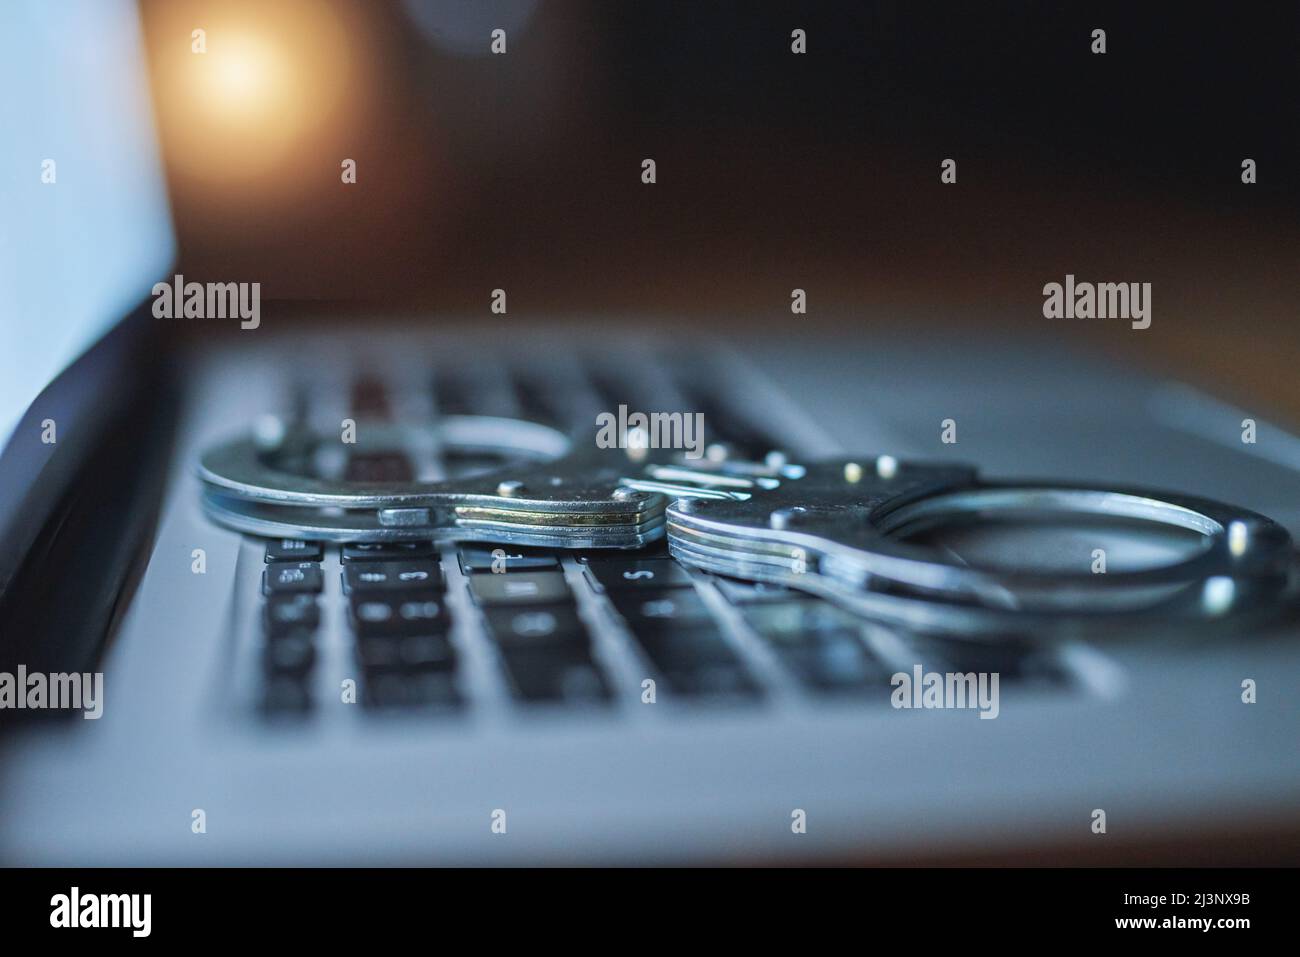 Treffen Sie zusätzliche Vorsichtsmaßnahmen, um sich vor Cyberkriminalität zu schützen. Aufnahme eines Paares Handschellen, die im Dunkeln auf einer Laptop-Tastatur liegen. Stockfoto